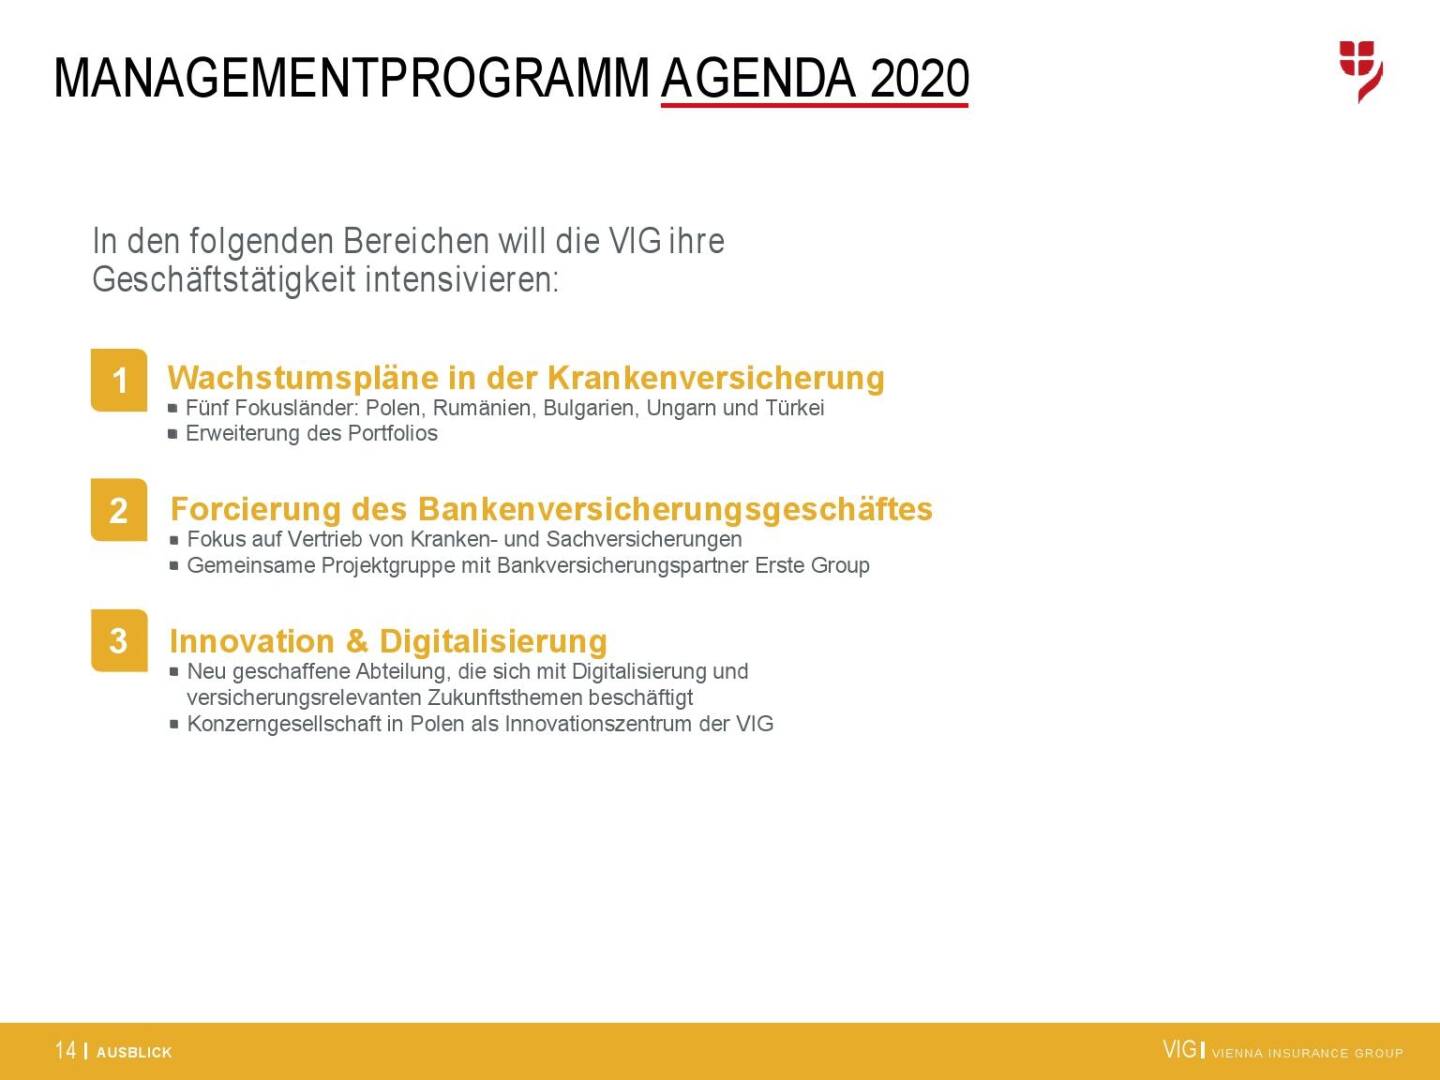 VIG Unternehmenspräsentation - Managementprogramm Agenda 2020